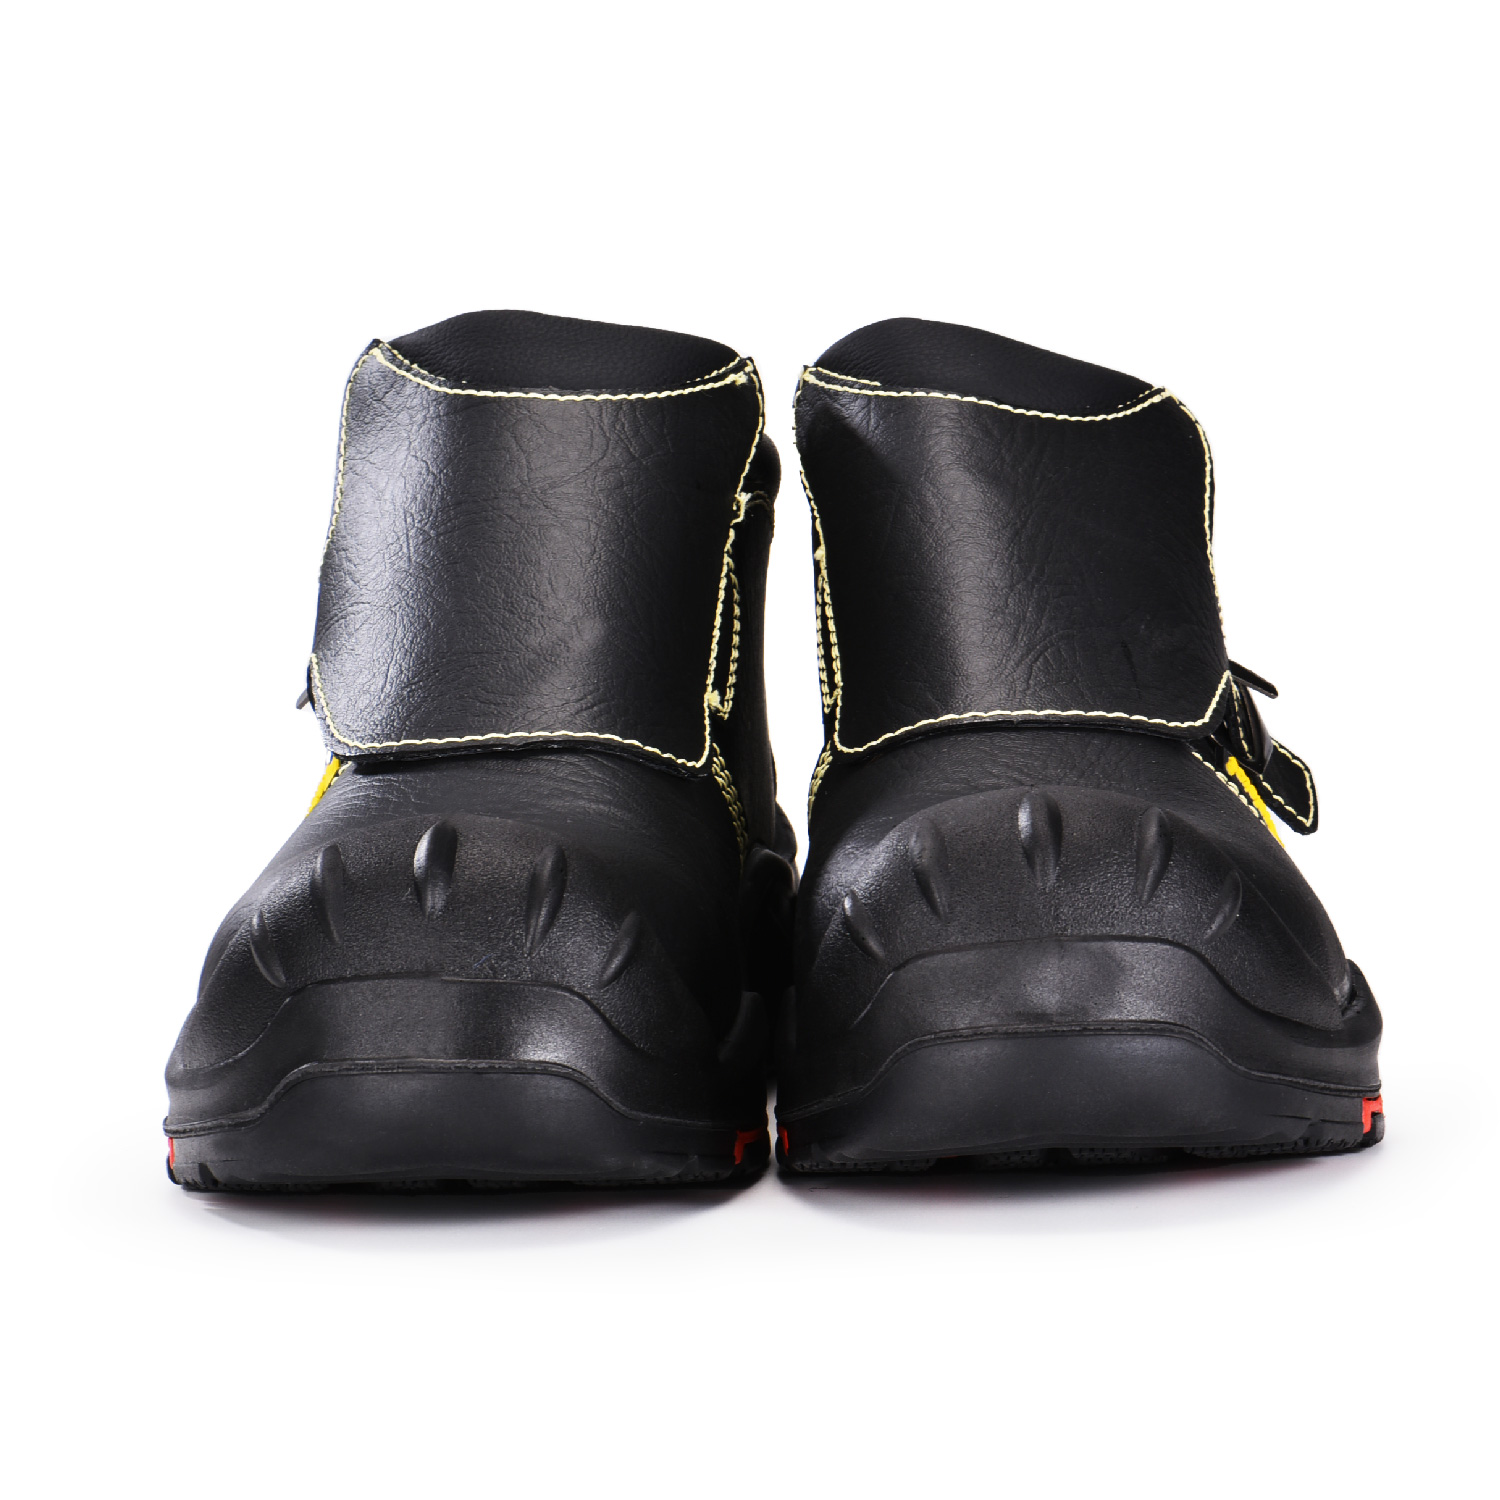 Botas de soldadura de seguridad duraderas, negras, con punta compuesta y tapa superior con placa de Kevlar M-8387 Nuevo